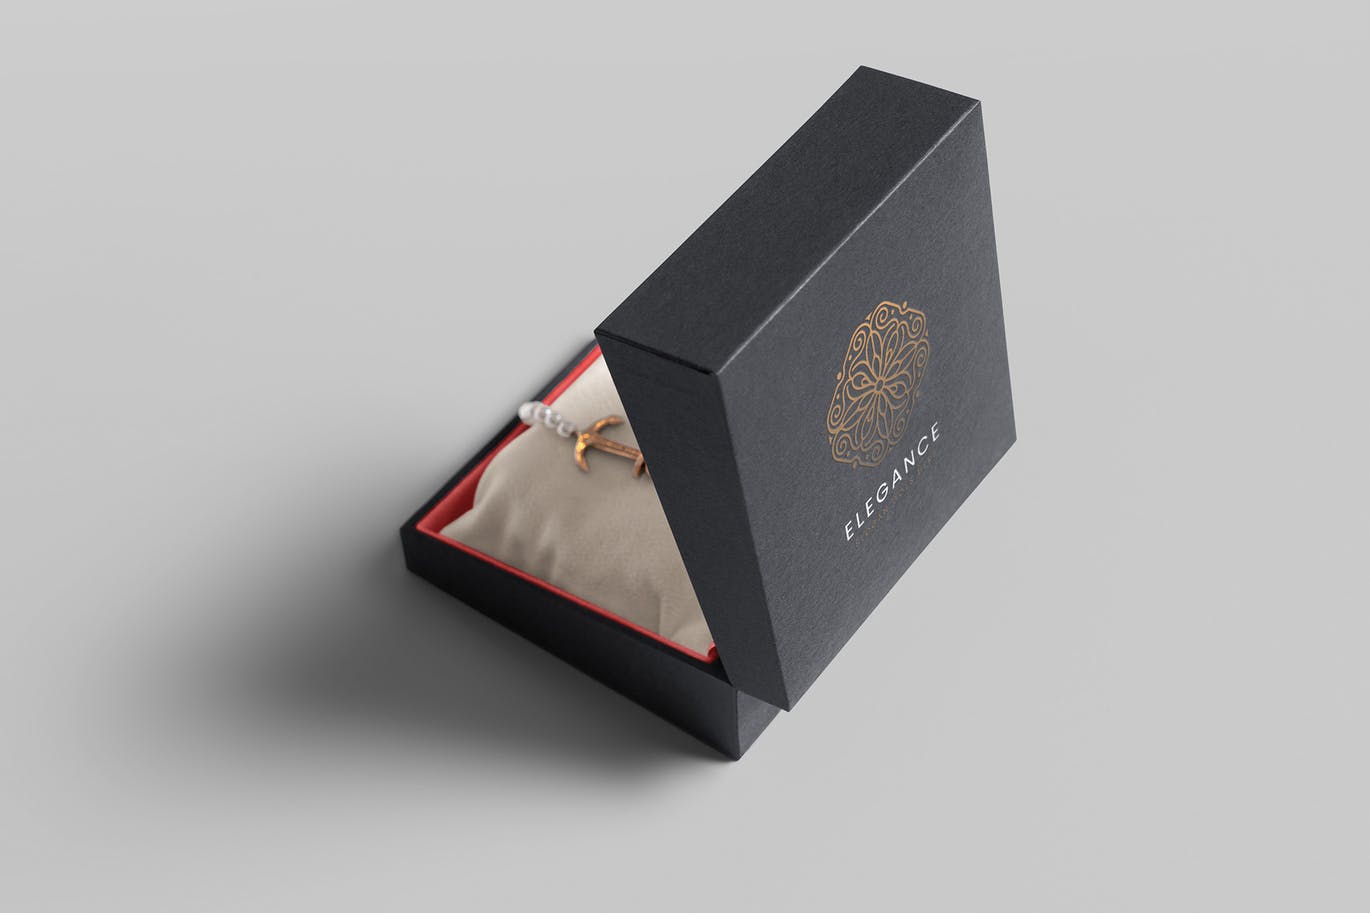 珠宝包装盒设计图第一素材精选模板 Jewelry Packaging Box Mockups插图(4)